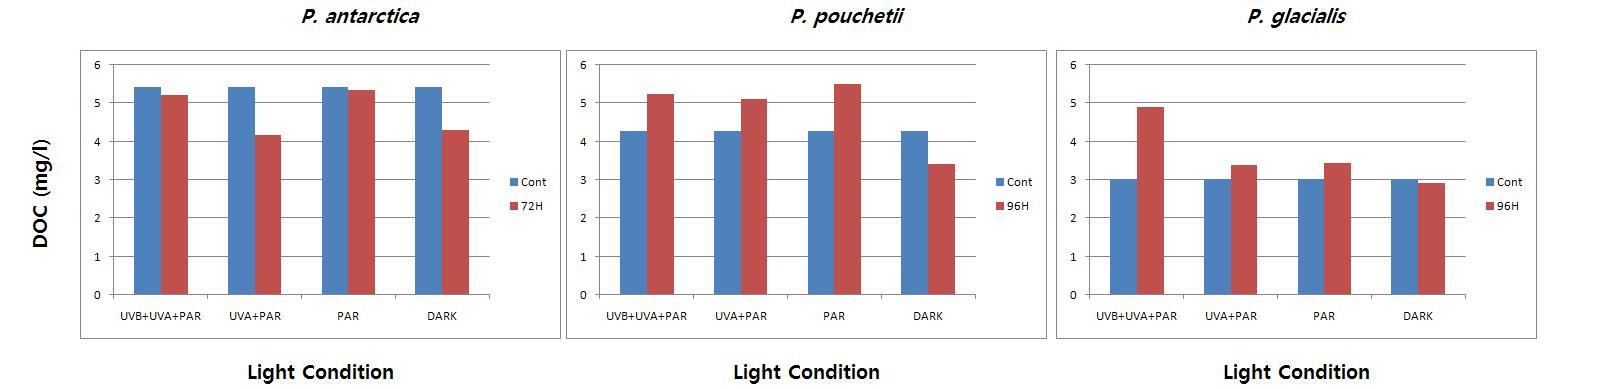 각 식물플랑크톤의 배양액 중 빛 조건에 따른 DOC의 초기 농도와 최종 농도 비교